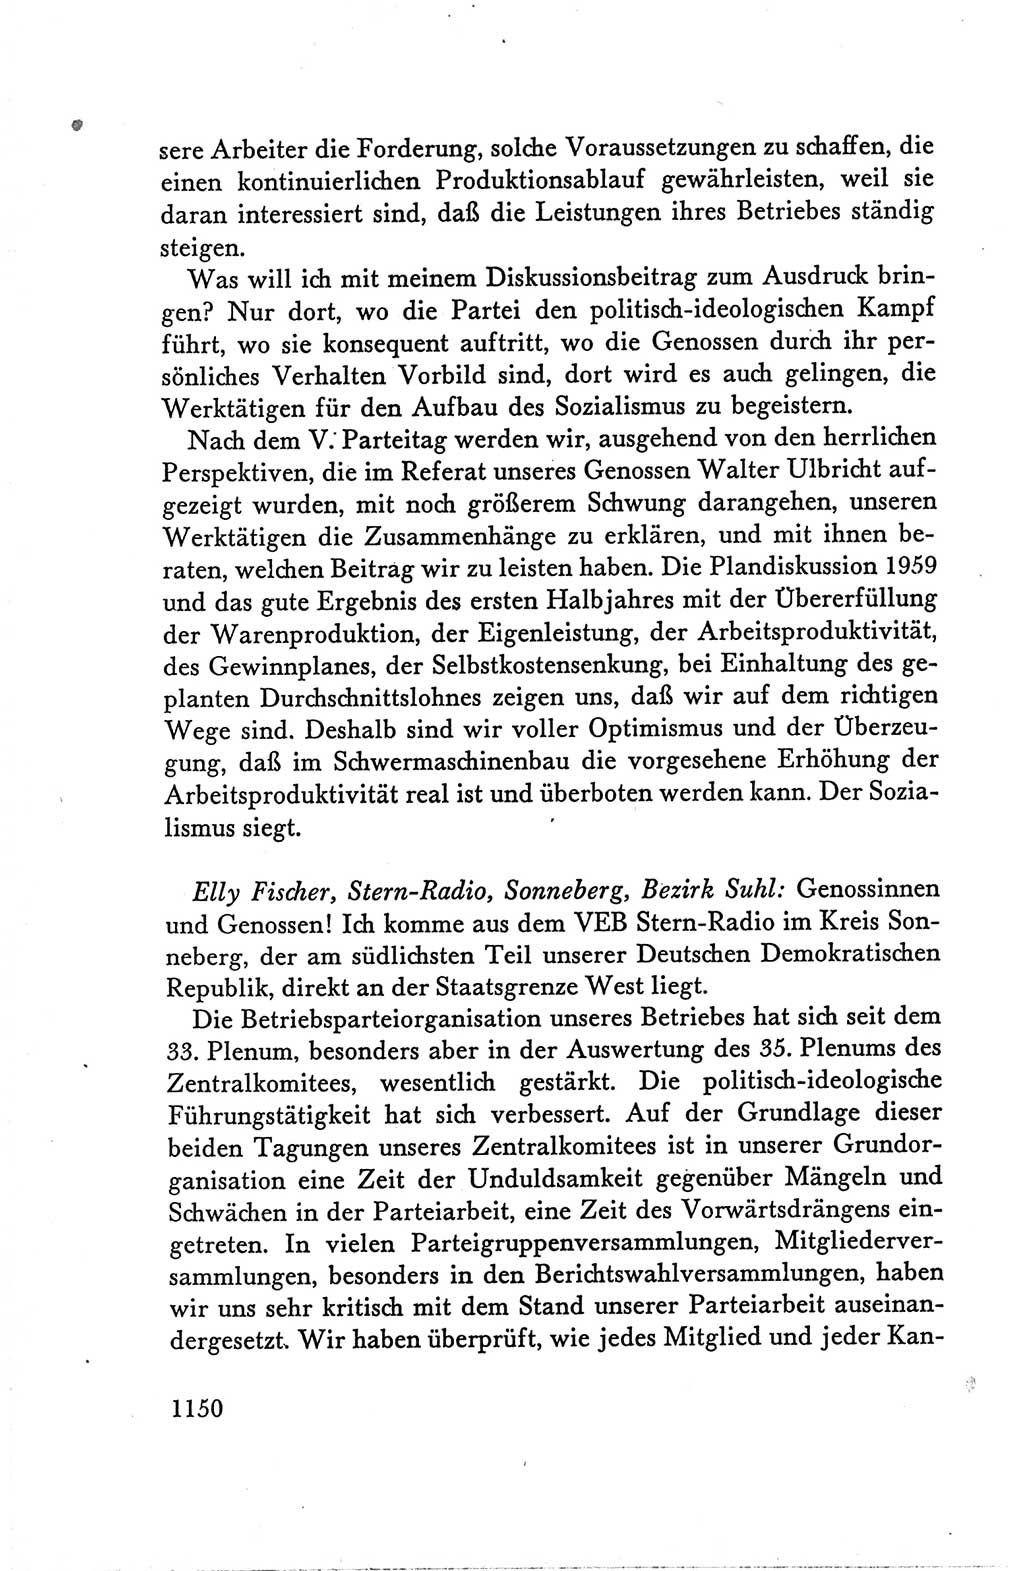 Protokoll der Verhandlungen des Ⅴ. Parteitages der Sozialistischen Einheitspartei Deutschlands (SED) [Deutsche Demokratische Republik (DDR)] 1958, Seite 1150